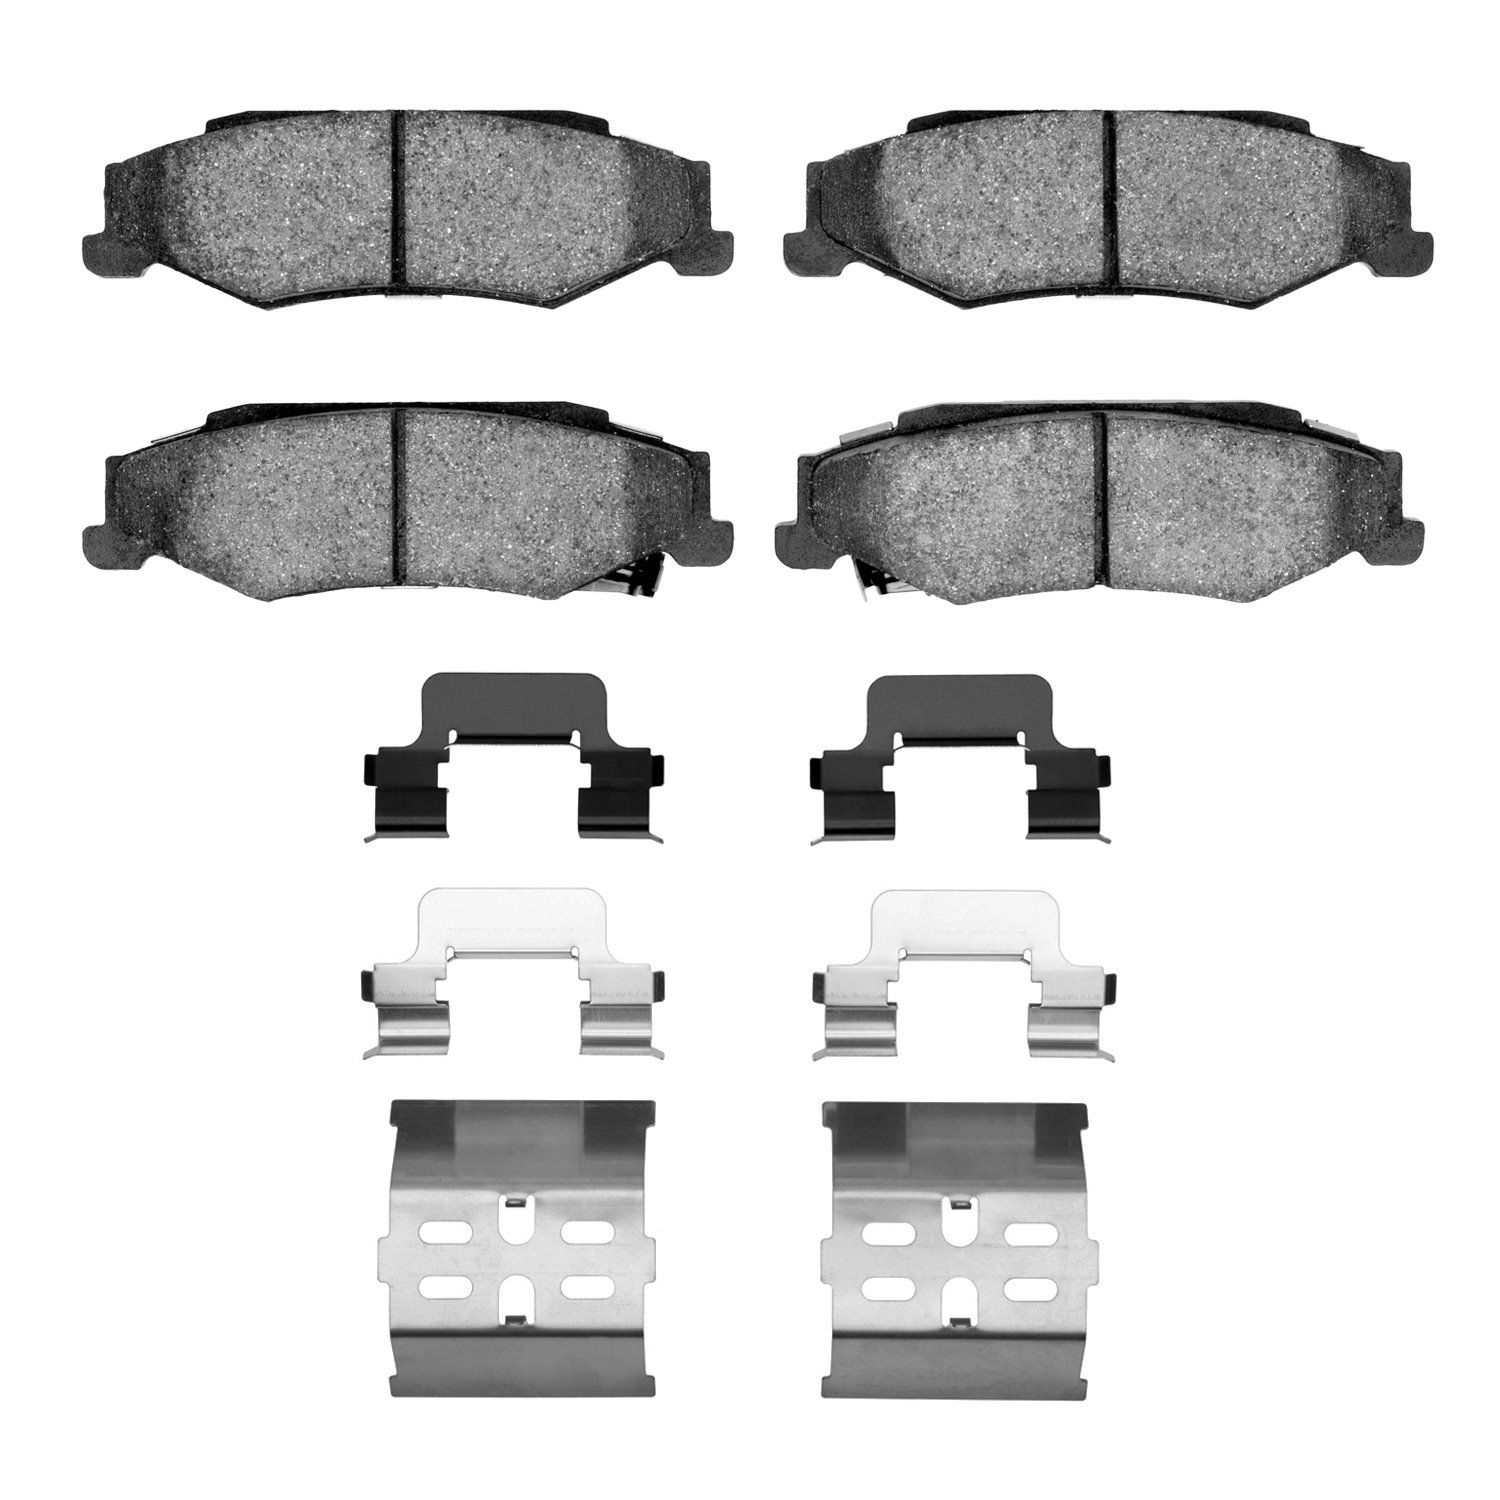 1310-0732-01 3000-Series Ceramic Brake Pads & Hardware Kit, 1997-2013 GM, Position: Rear